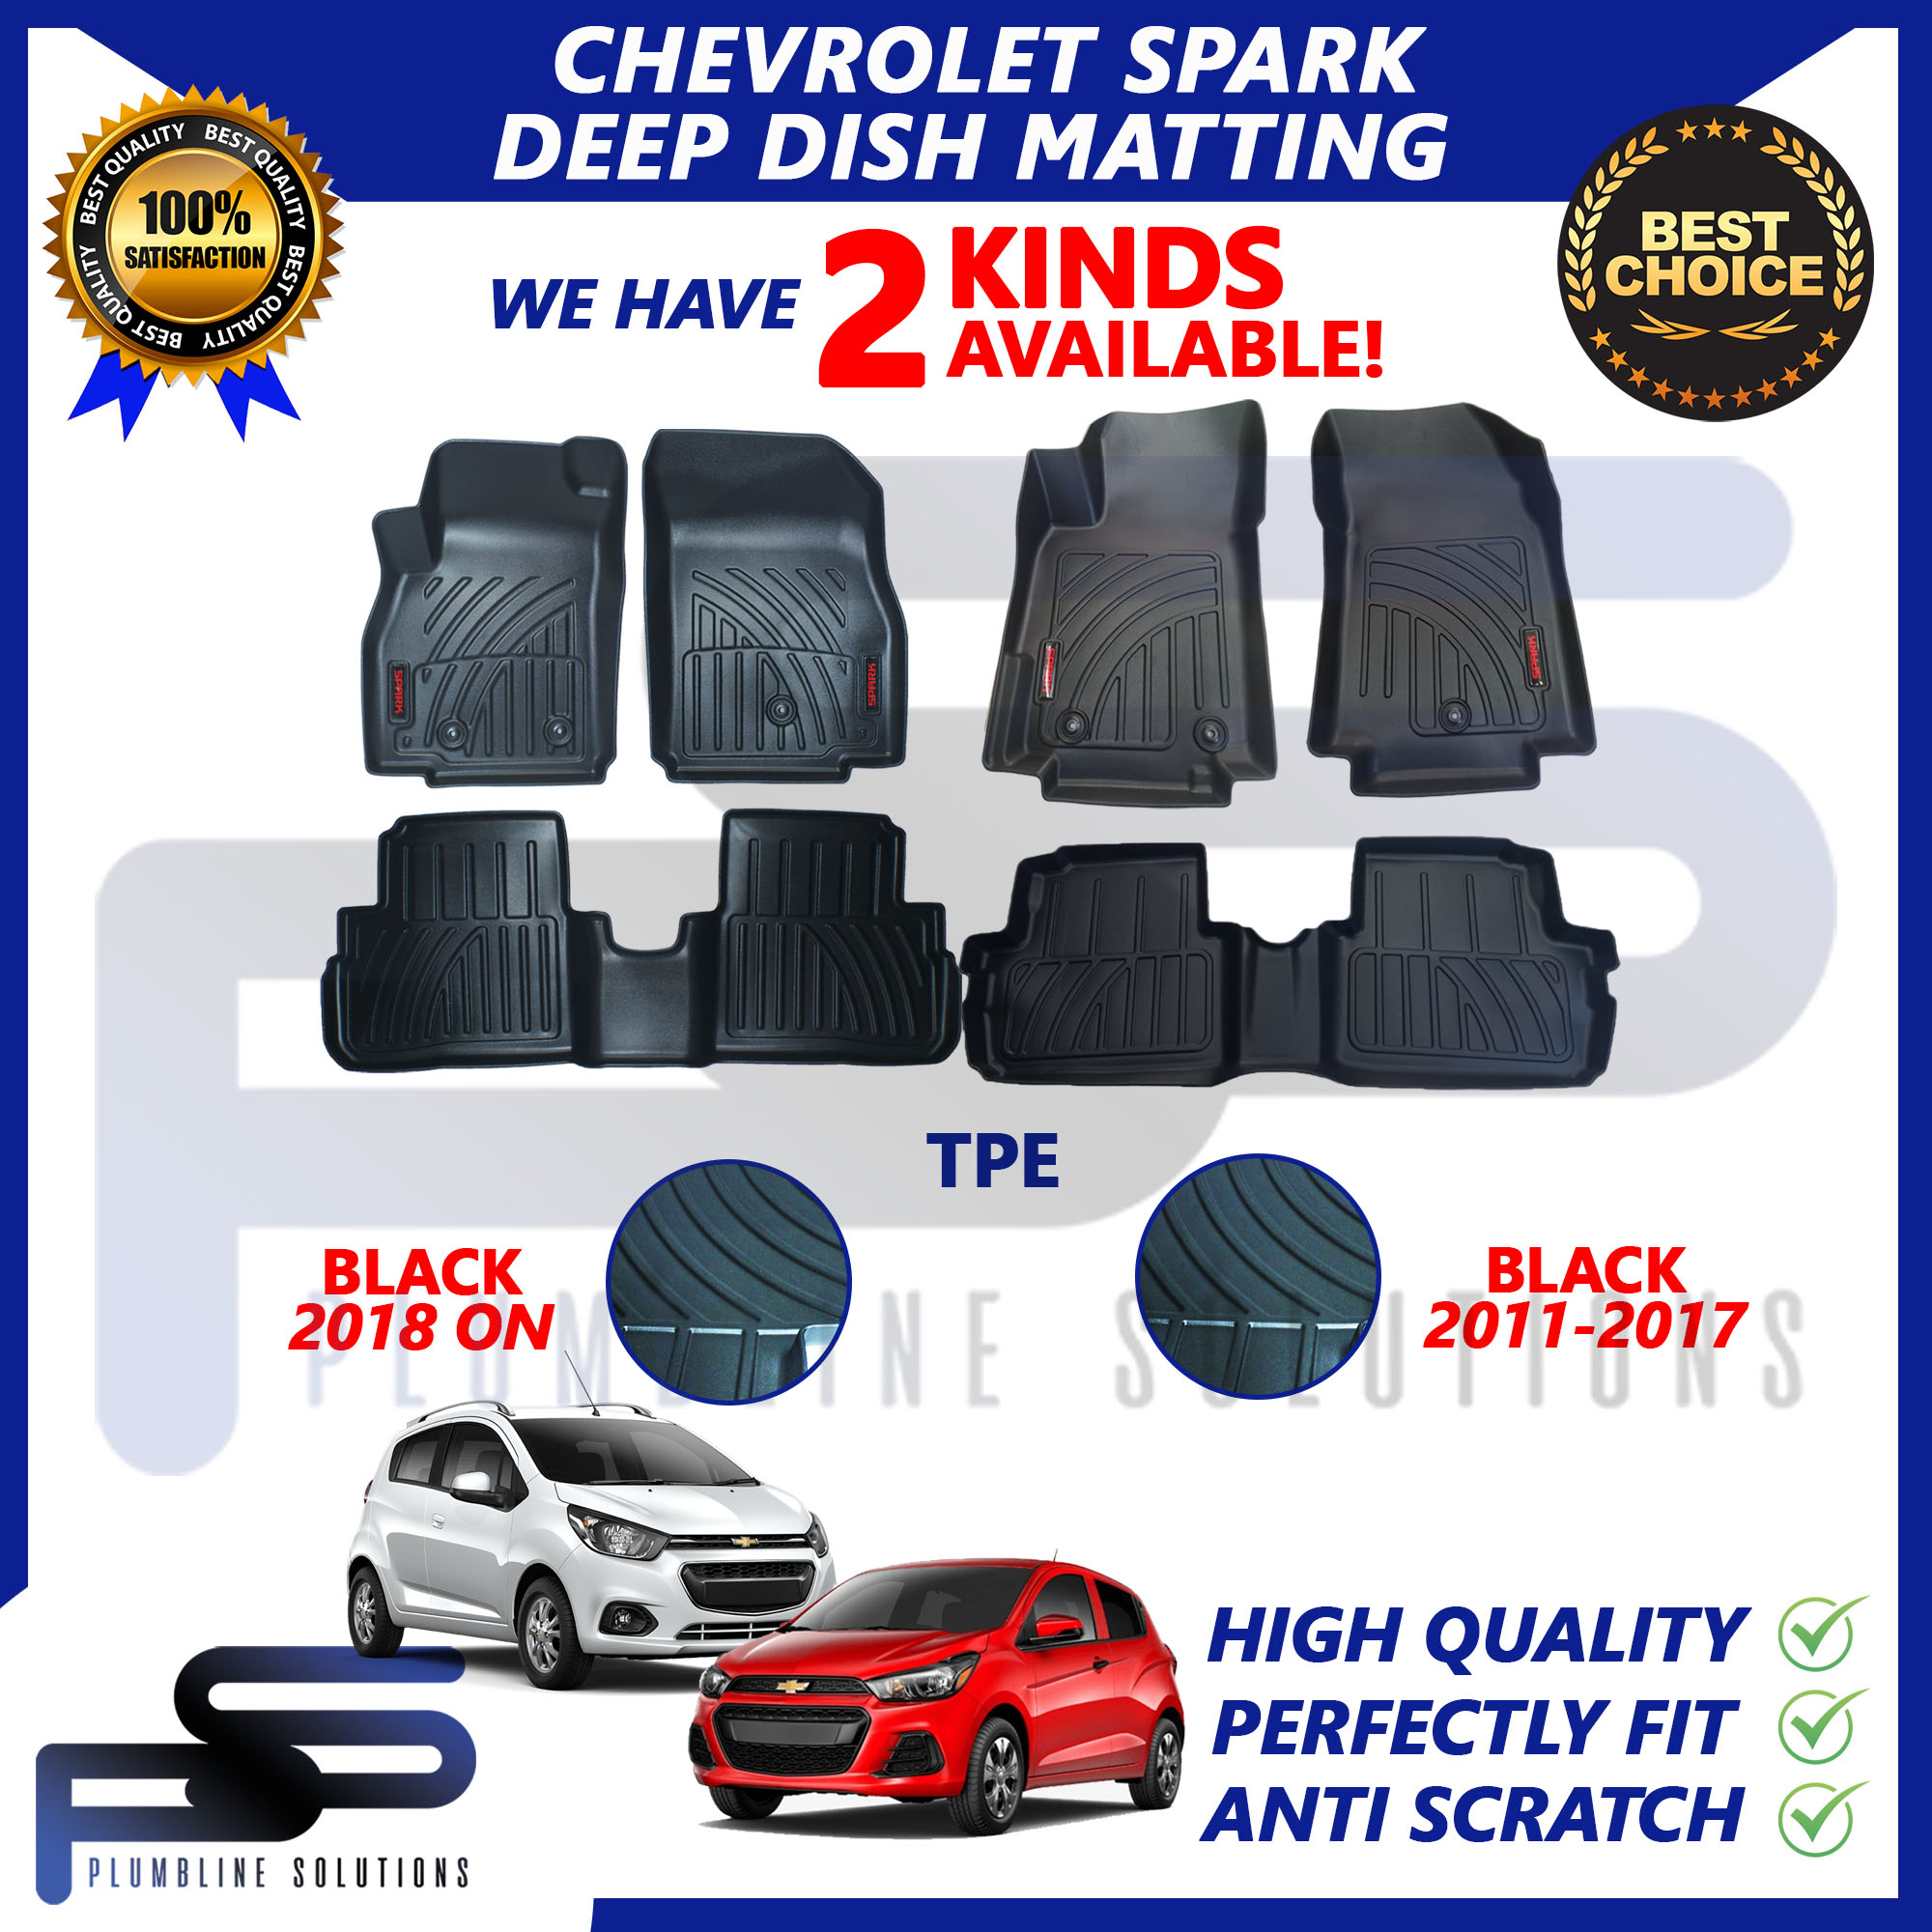 Shop Chevrolet Spark 2018 online